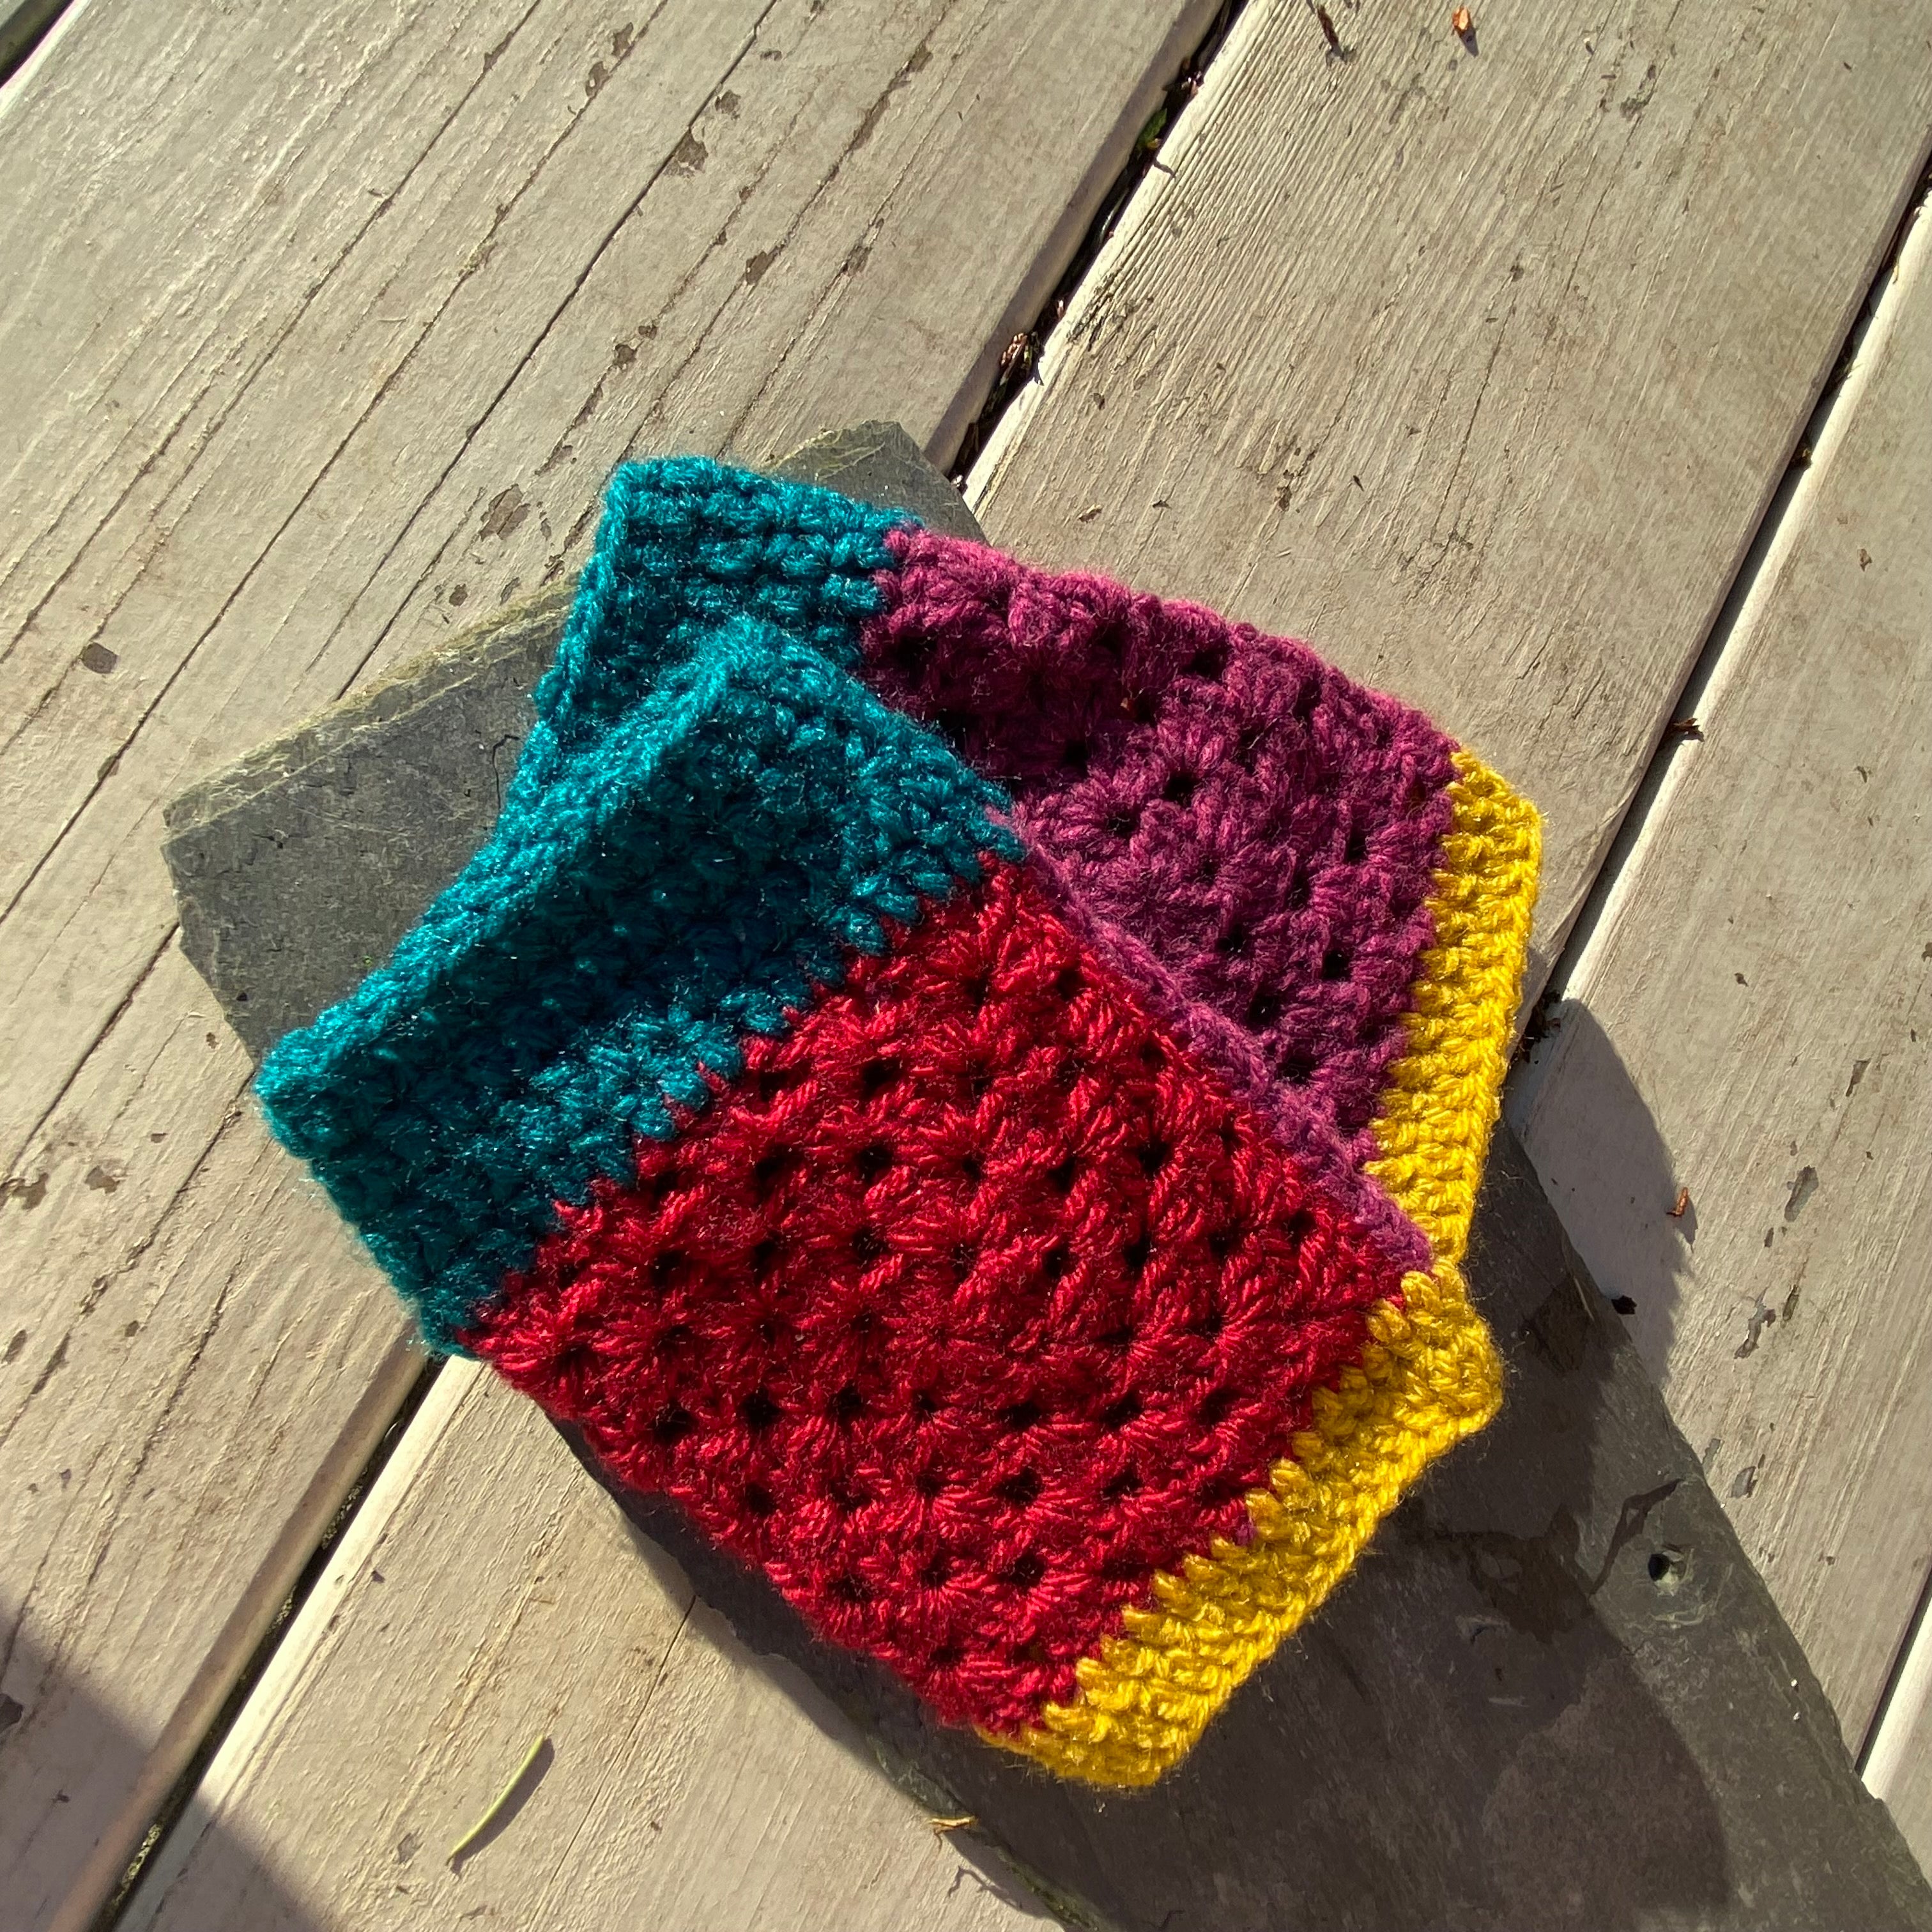 Fingerless Gloves - Colour Block Crocheted Handwarmers